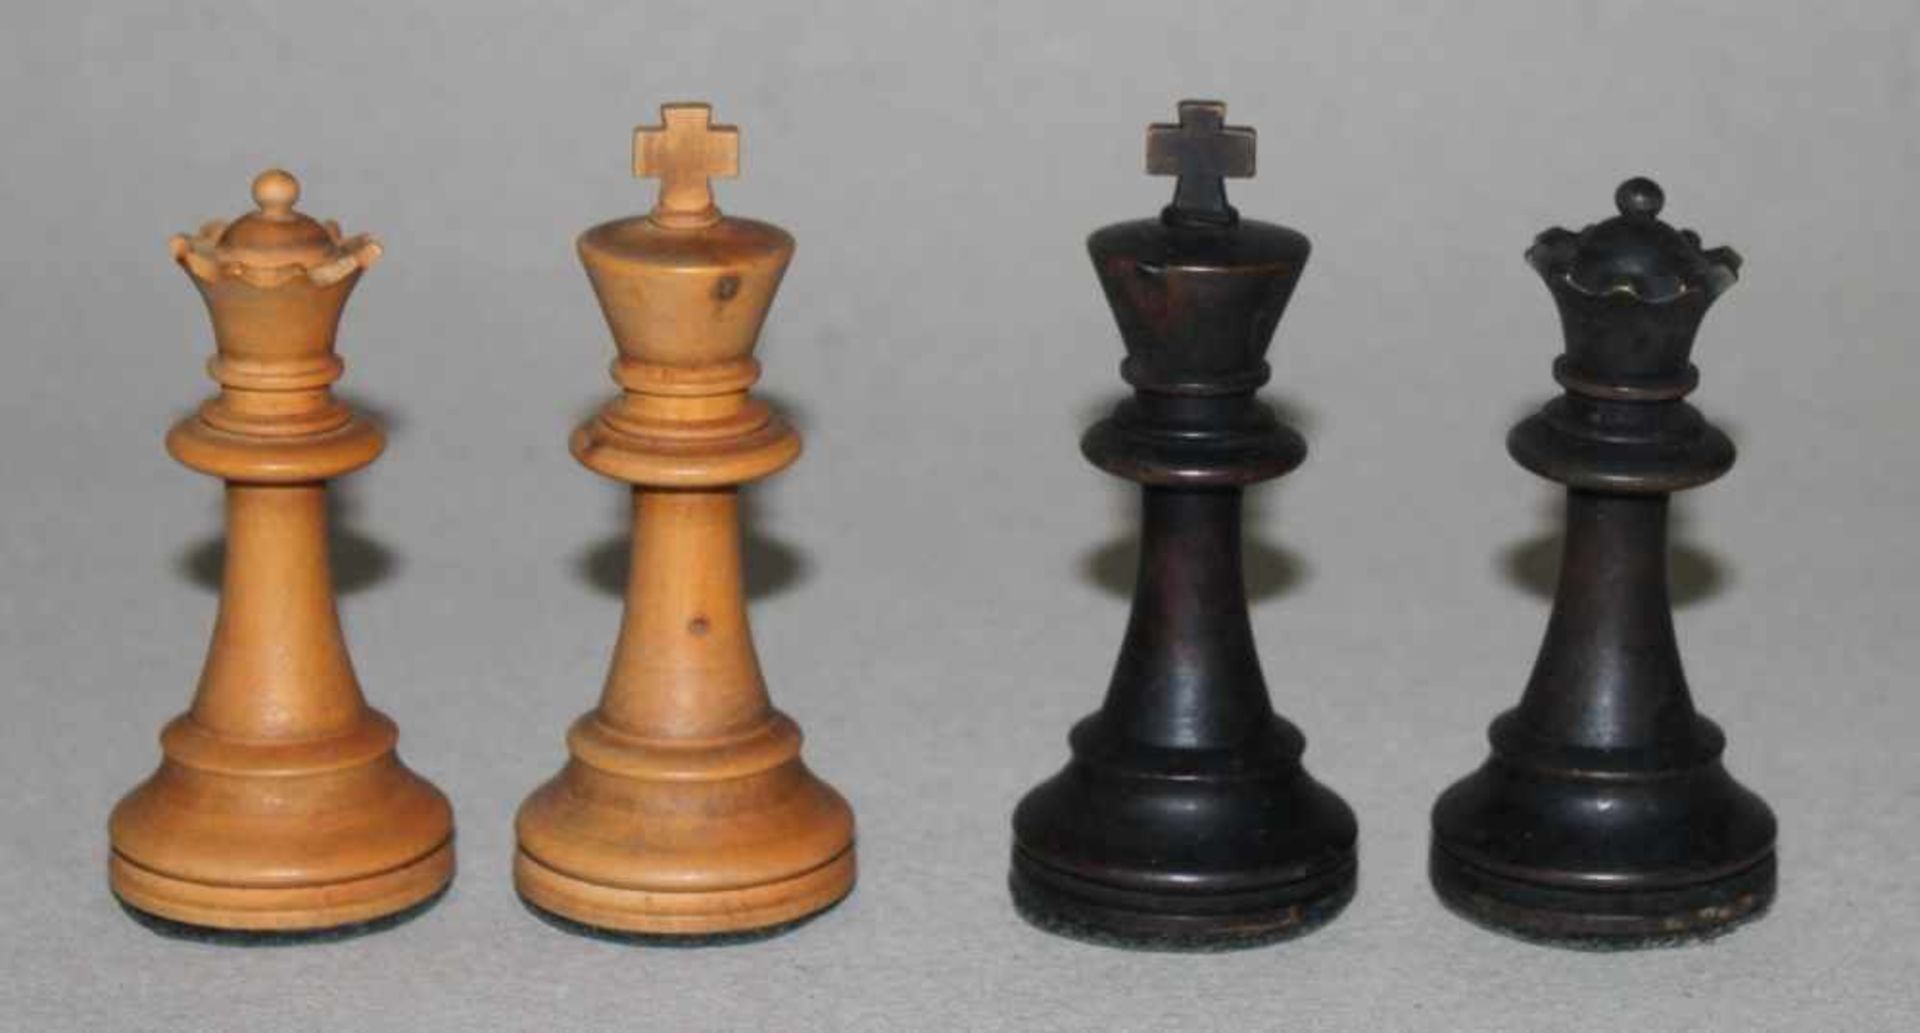 Europa. Schachfiguren aus Holz,in Anlehnung an den Staunton - Stil mit Schachbrett aus Holz. Eine